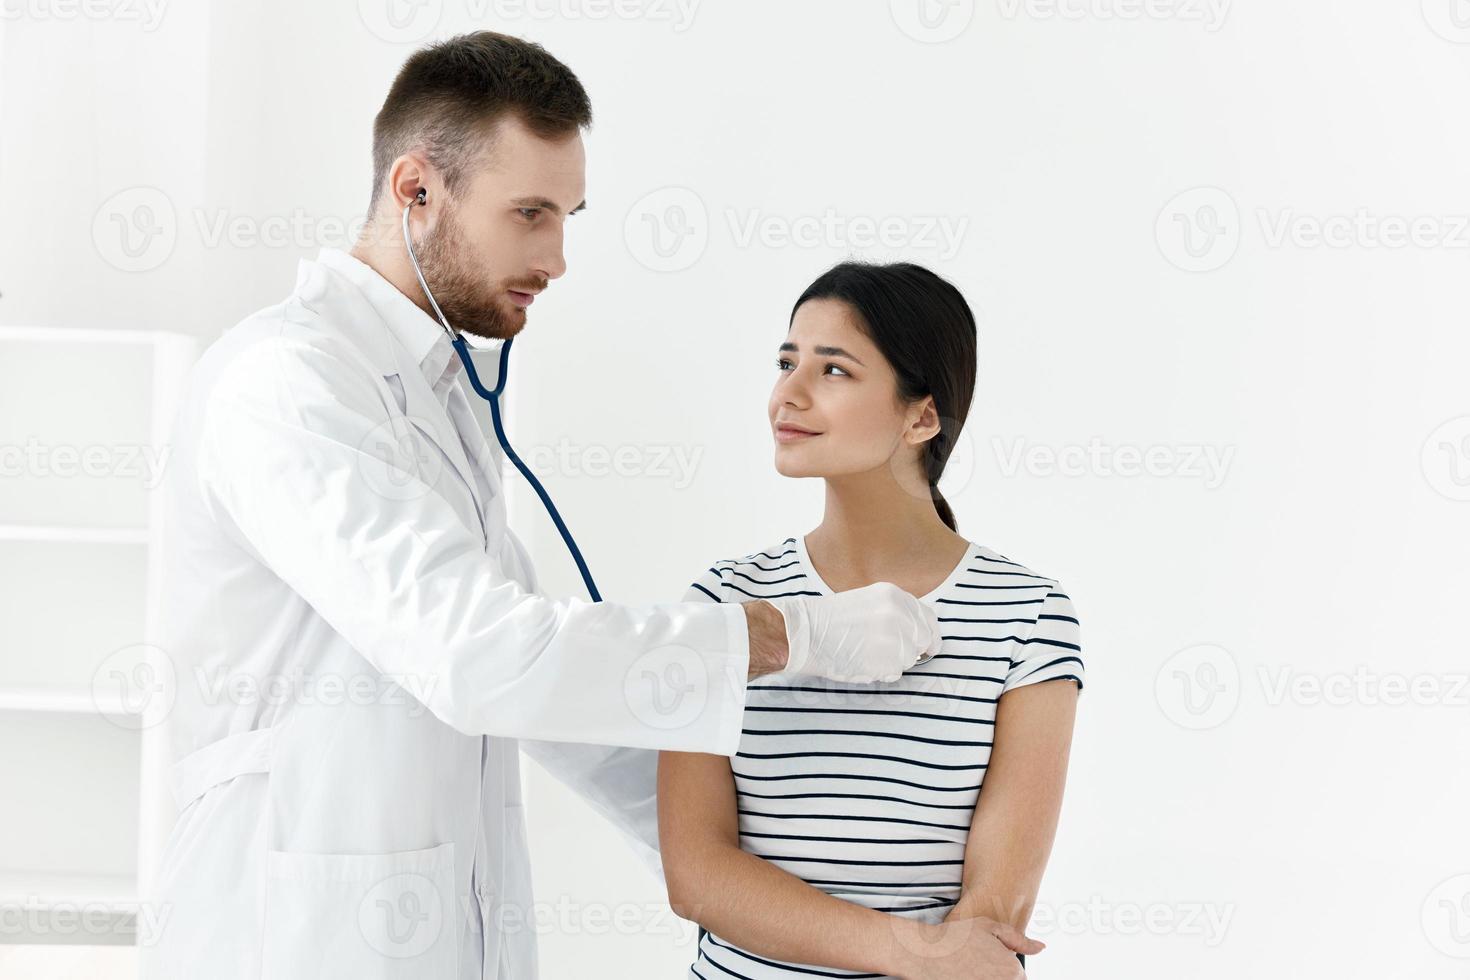 médecin dans une blanc manteau stéthoscope examen de une patient hôpital photo